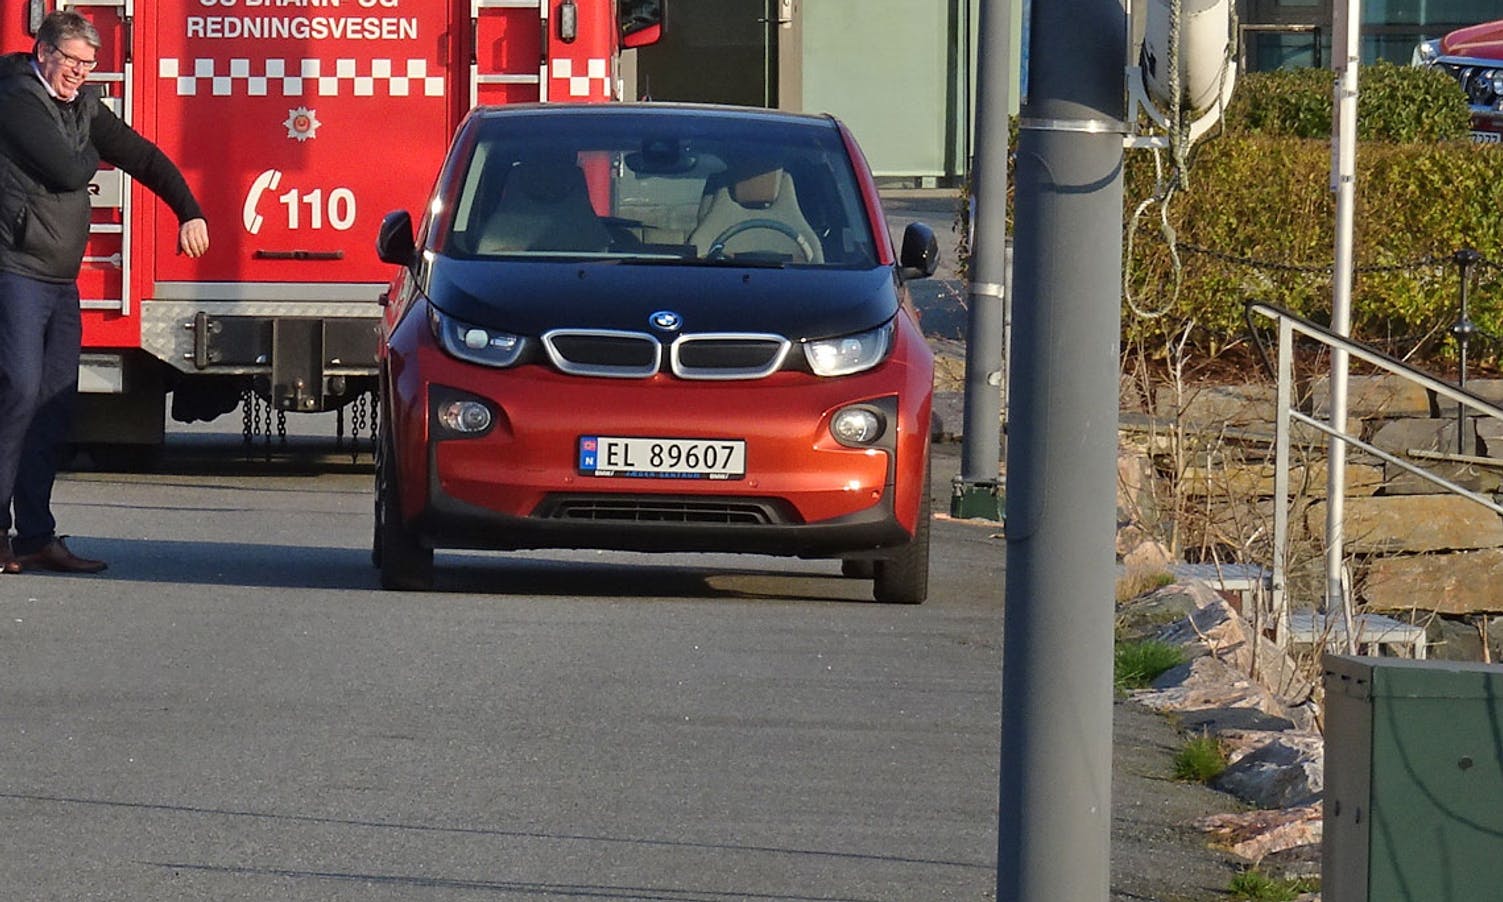 Bileigar viste seg å vera tipsar - og øvste sjef i Os kommune. (Foto: KVB)